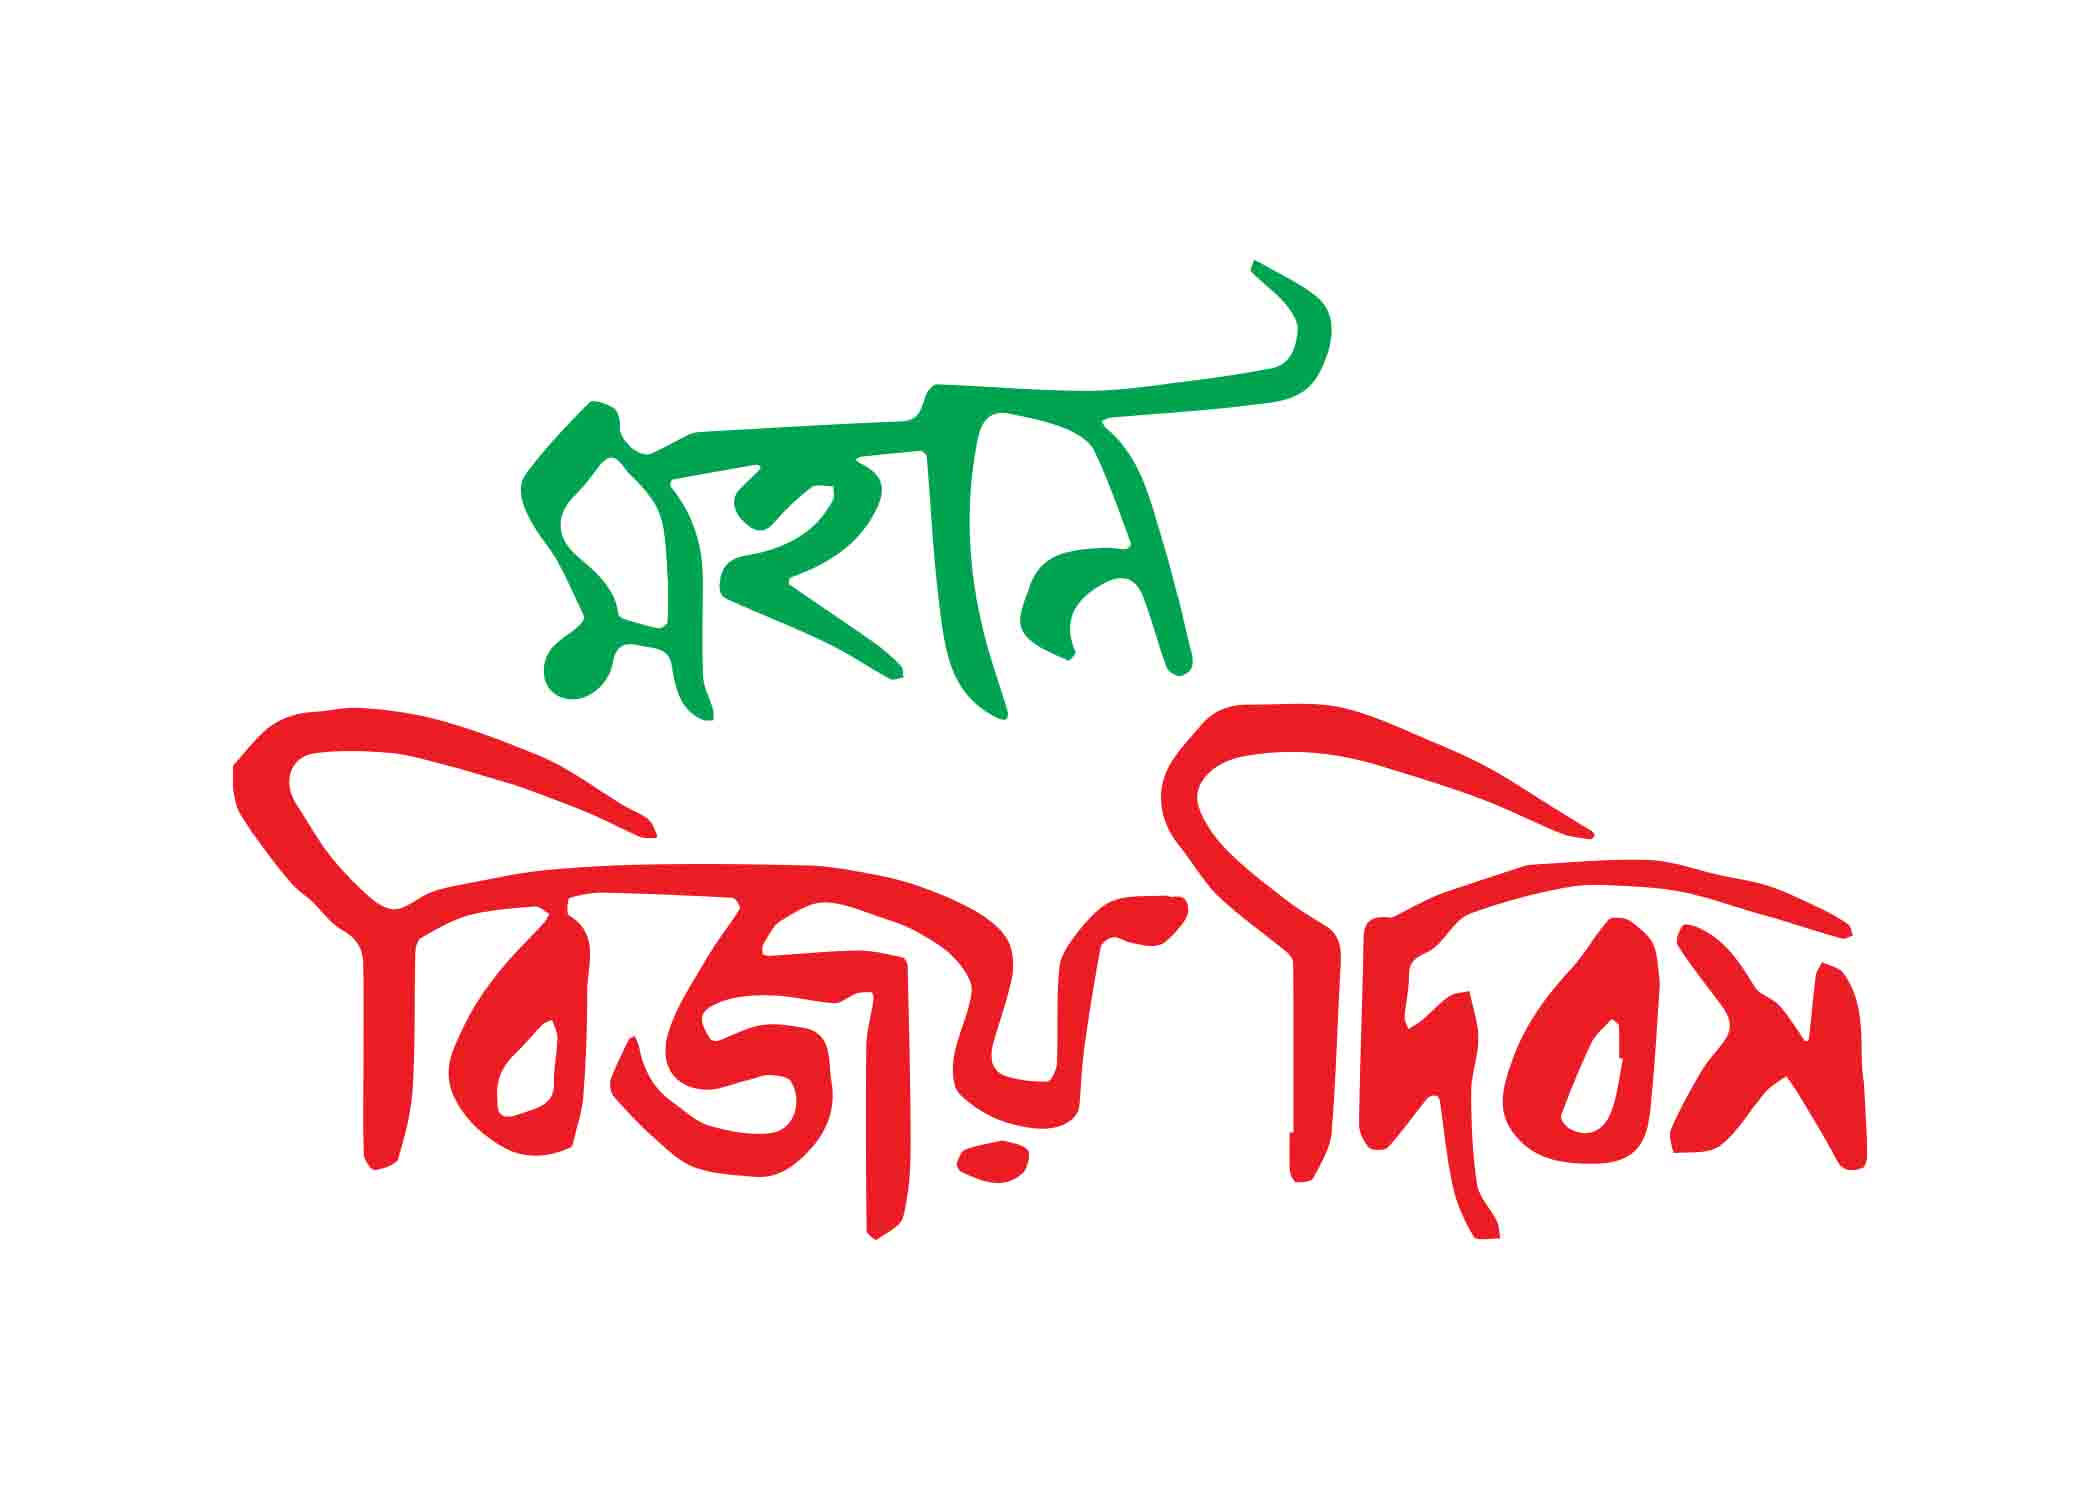 মহান বিজয় দিবস টাইপোগ্রাফি । Bangla Typography PNG